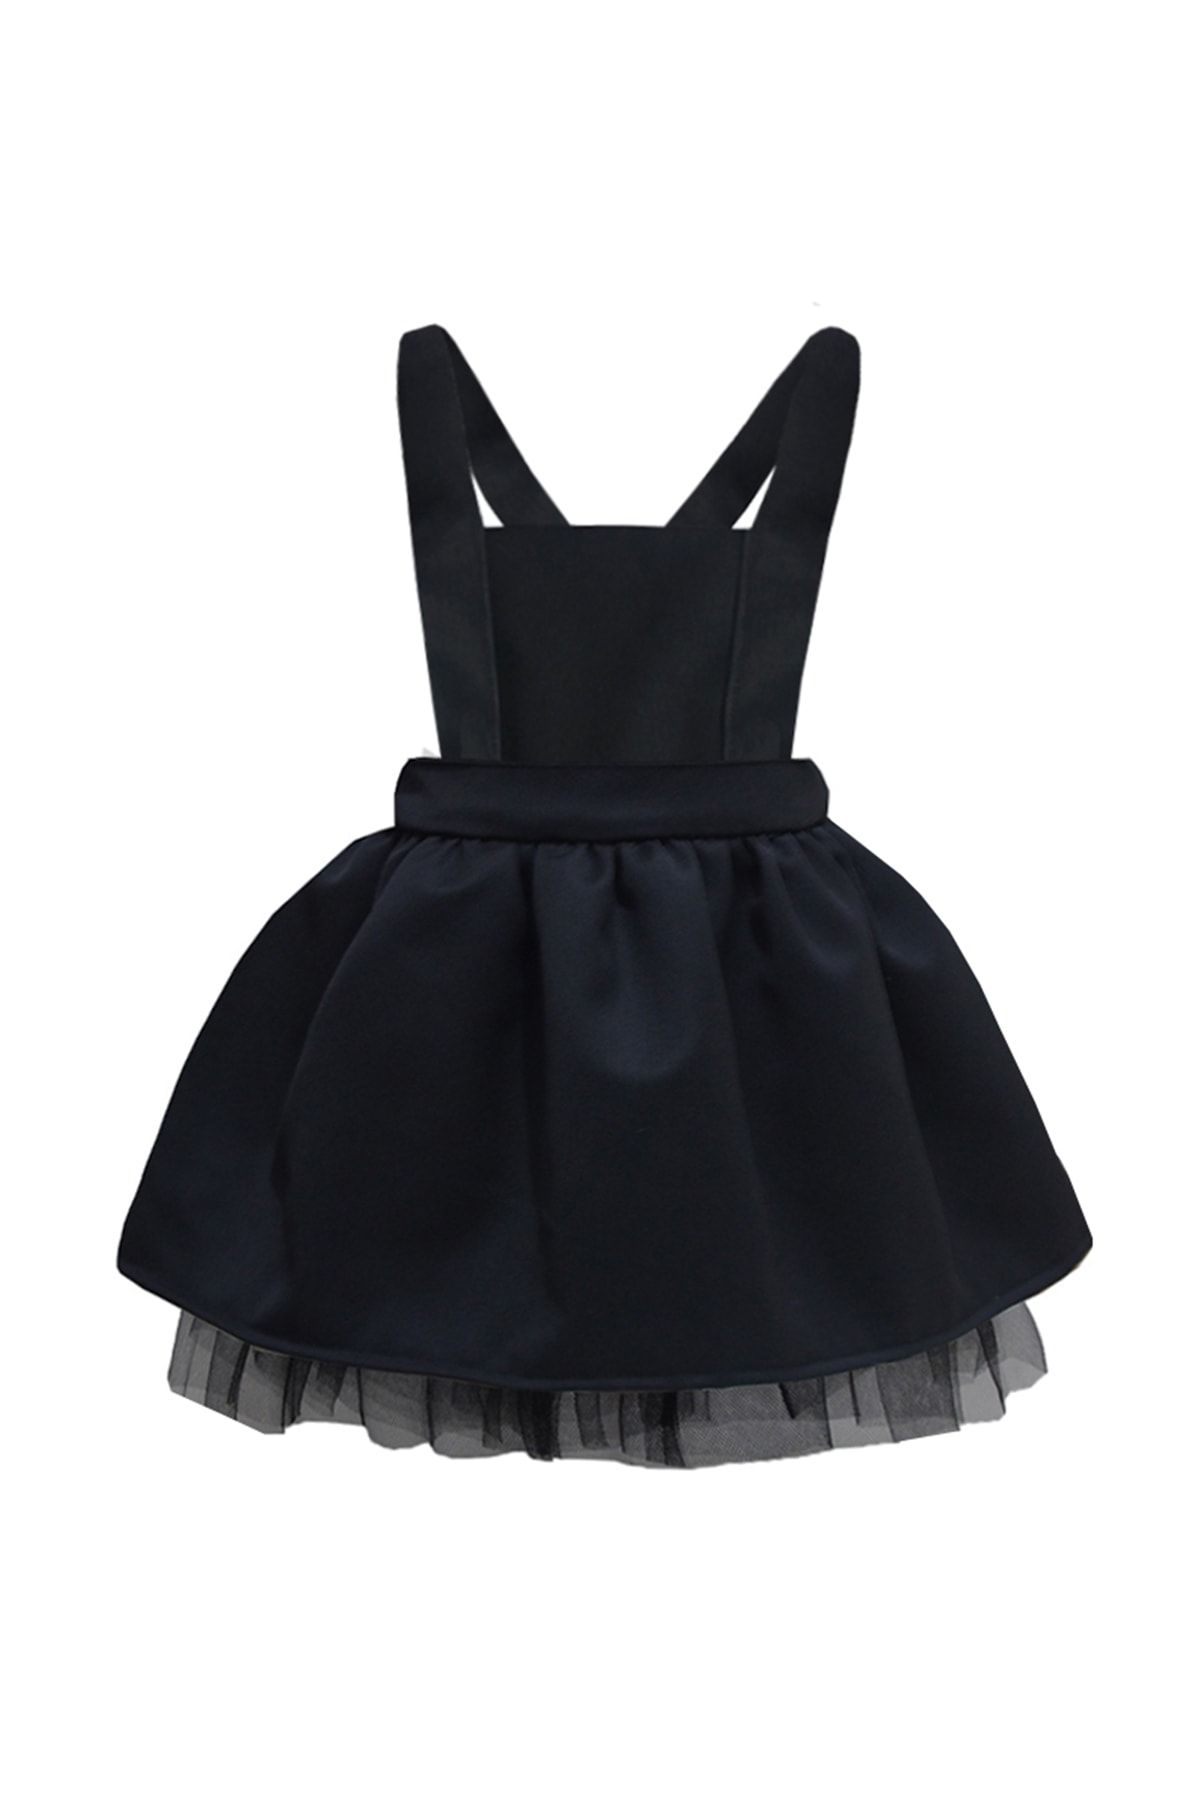 Shecco Babba Kız Çocuk Siyah Tütü Elbise, Doğum Günü Elbisesi, Kız Çocuk Elbise Modelleri 1-4 Yaş